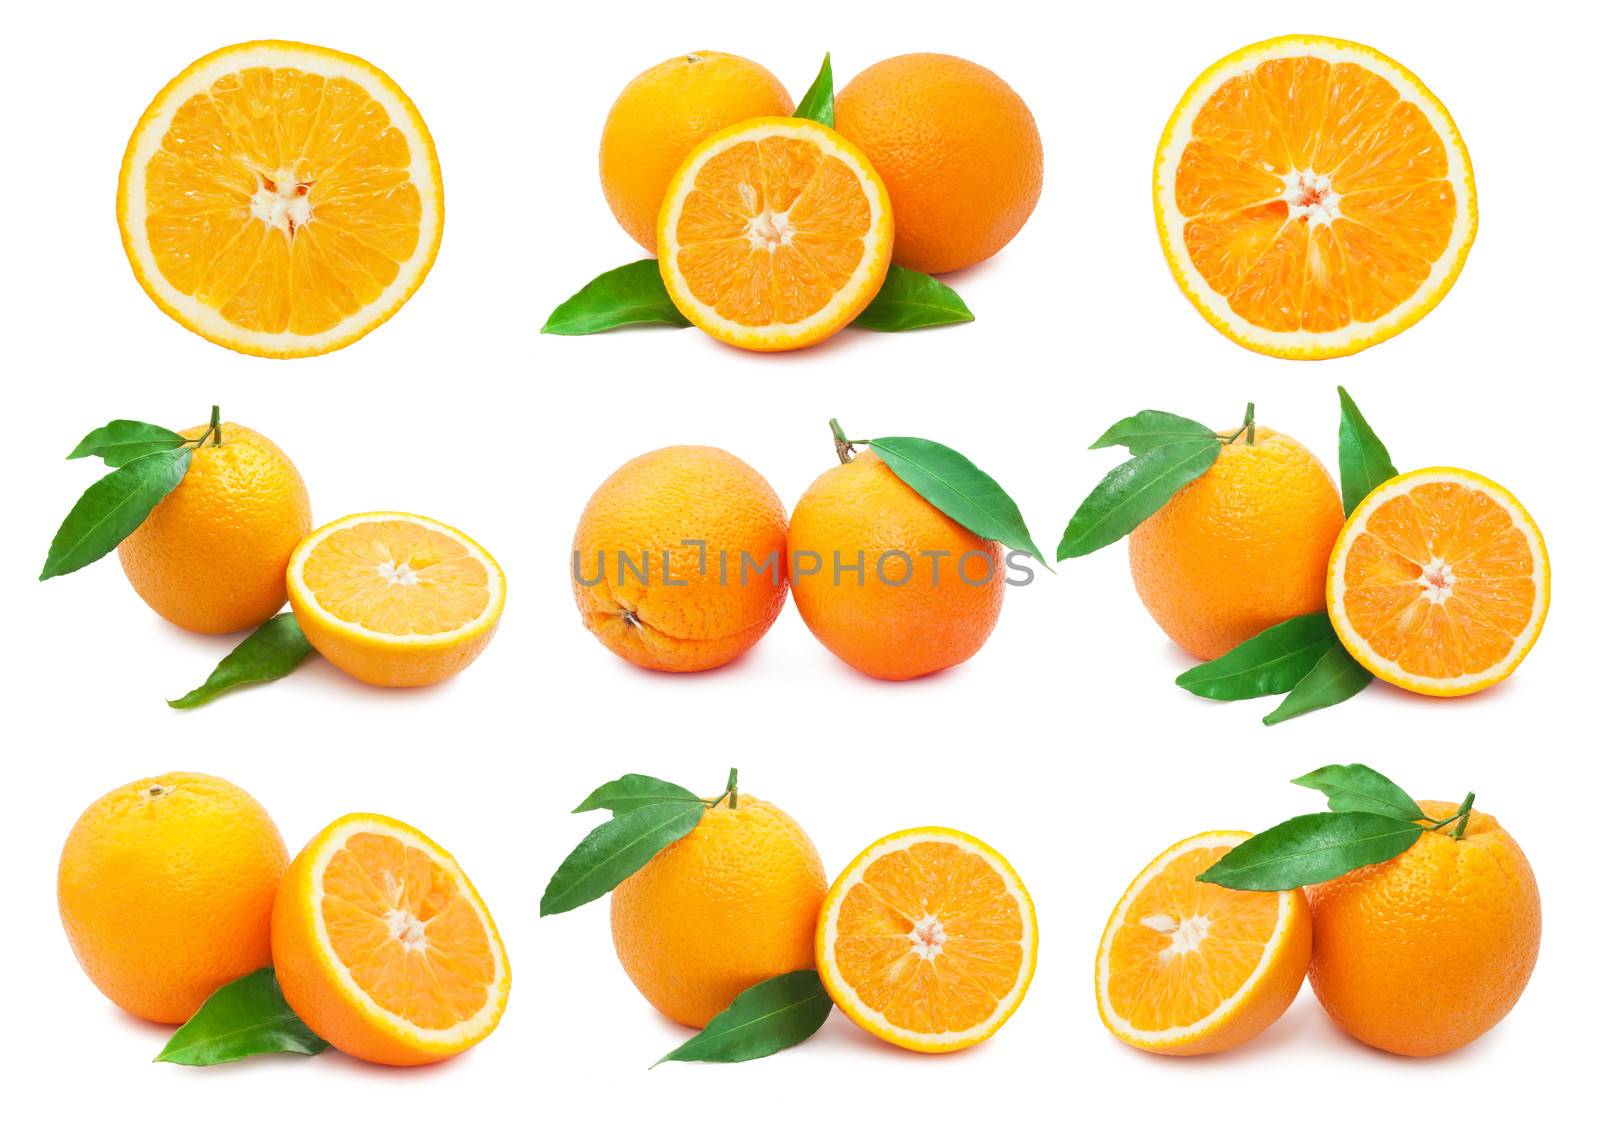 Oranges by sailorr